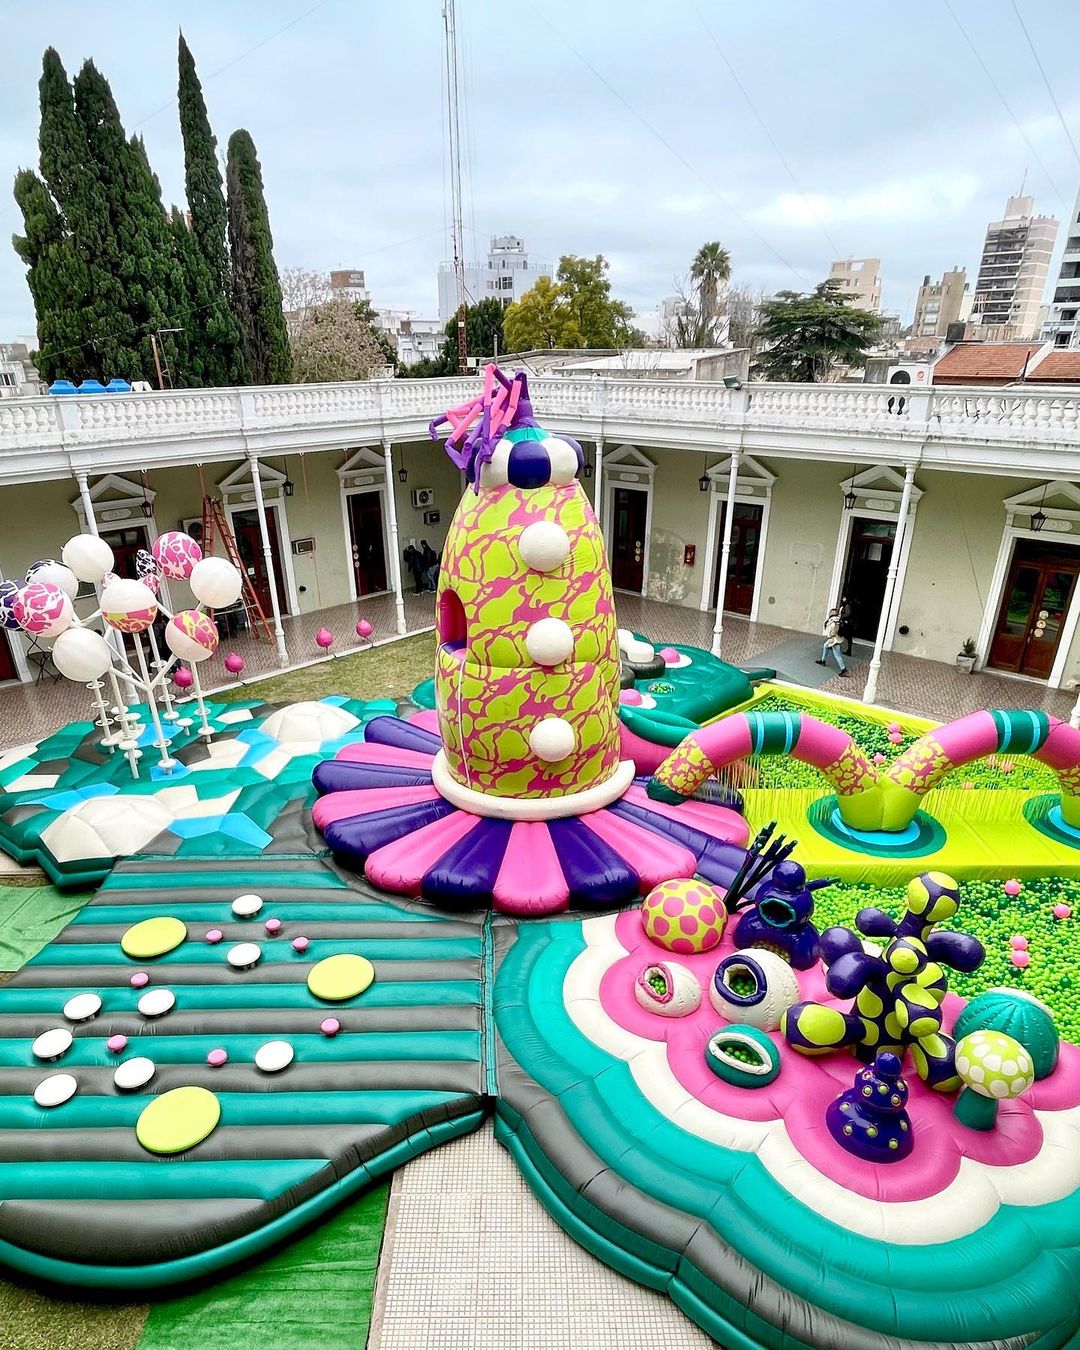 Parque Inflable Boooooin - Juegos inflables, Arte Inflable, Juegos con Publicidad - Boreas Designs